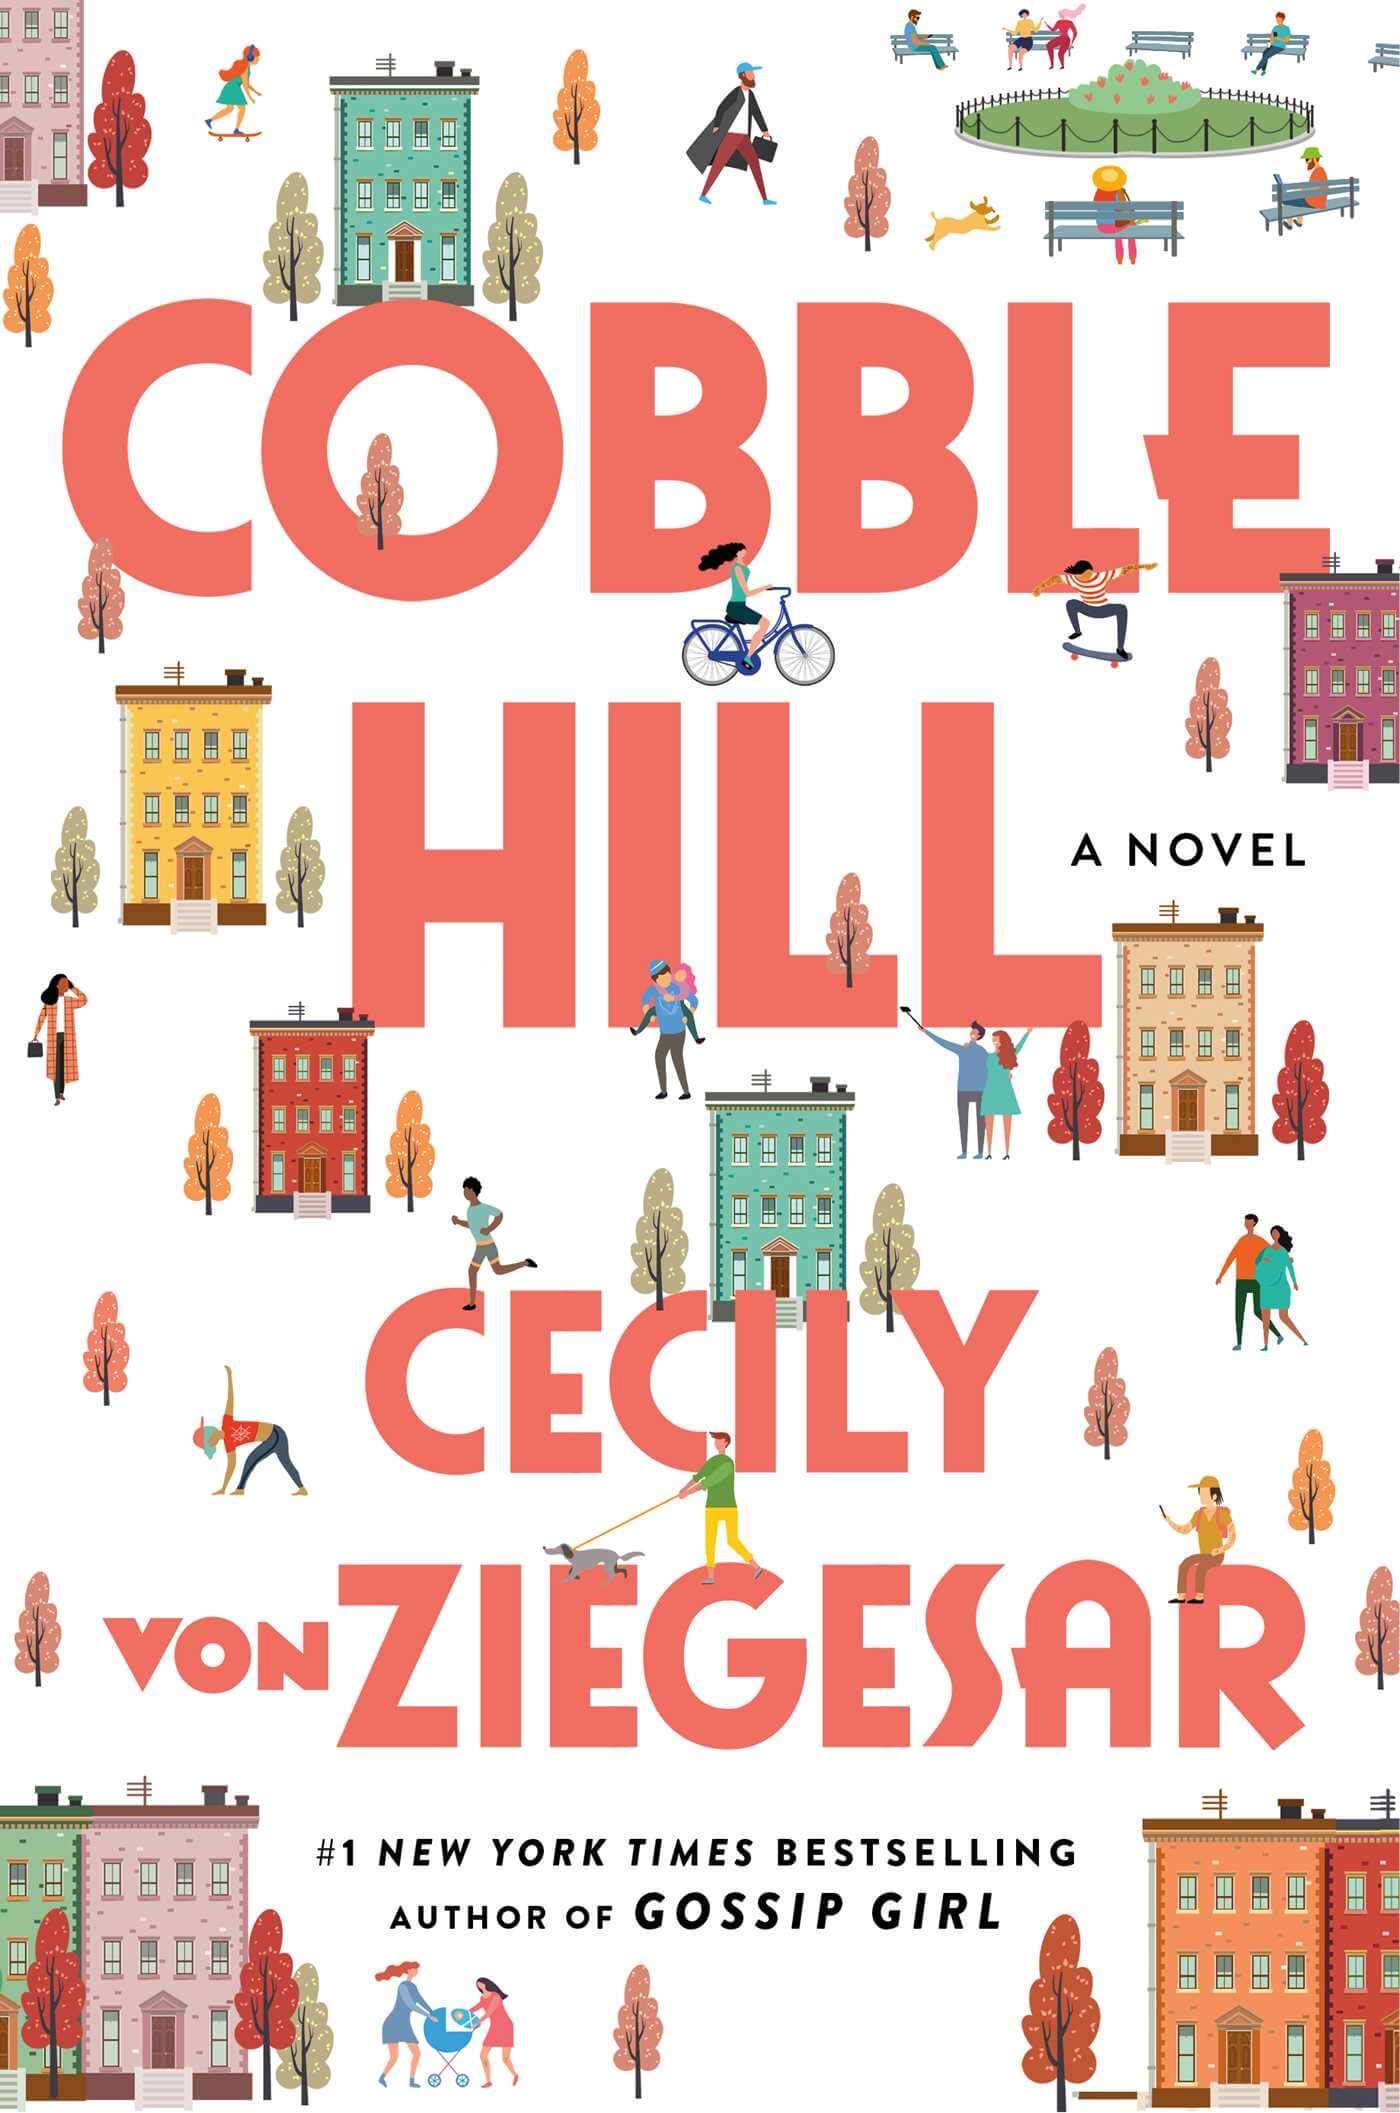 Cobble Hill by Cecily von Ziegesar